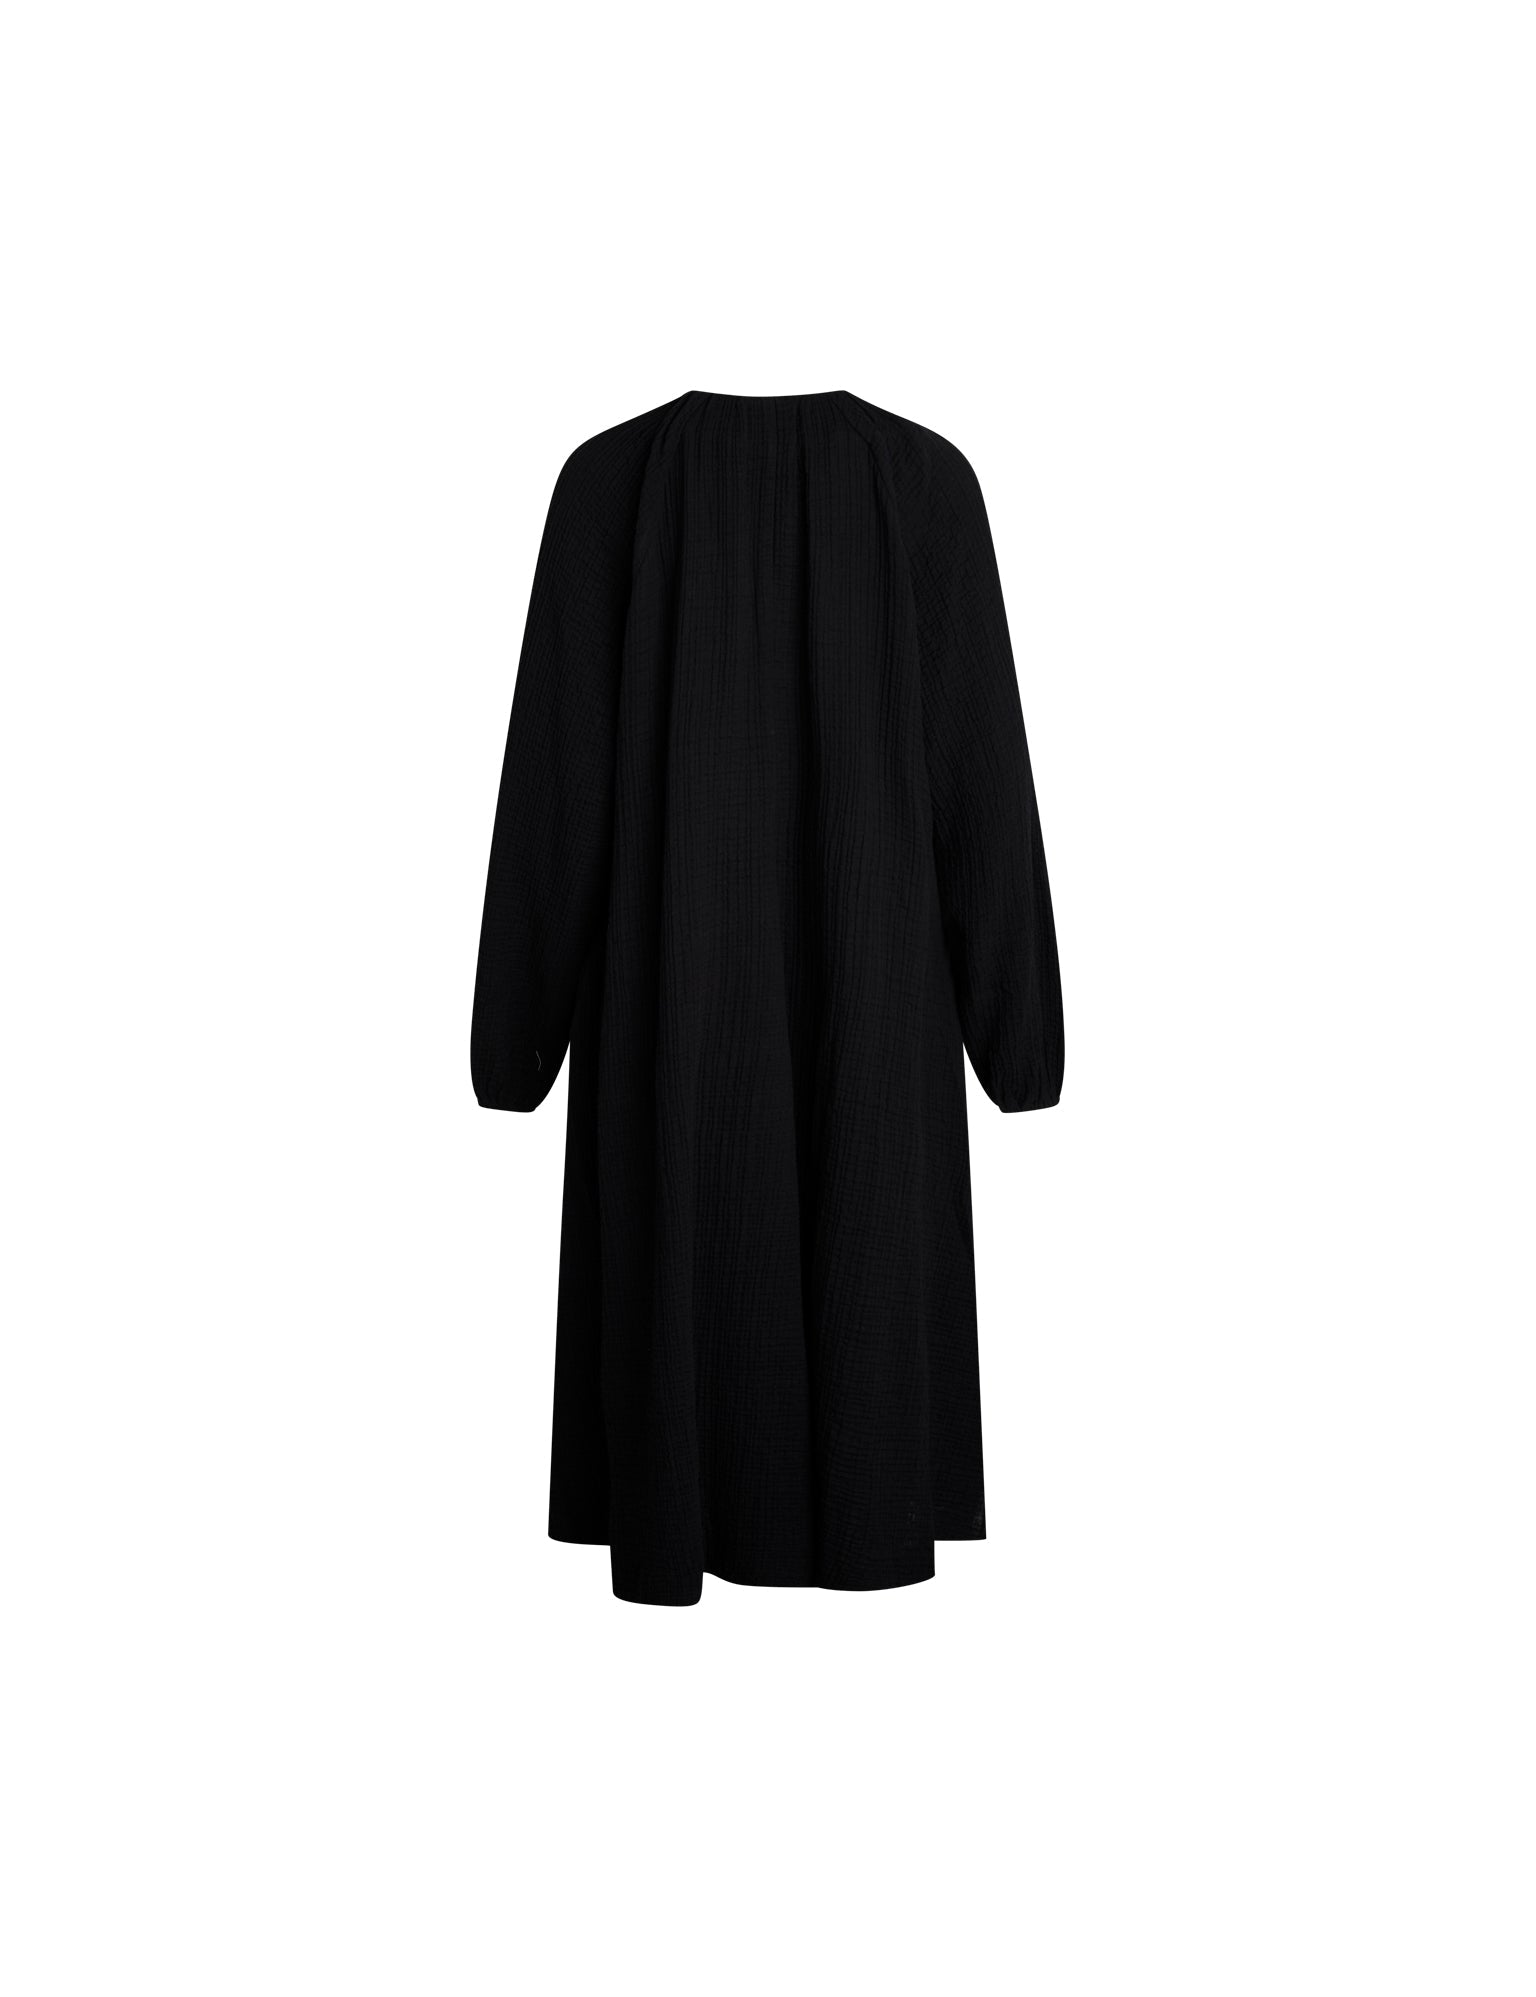 Gaze dress in black